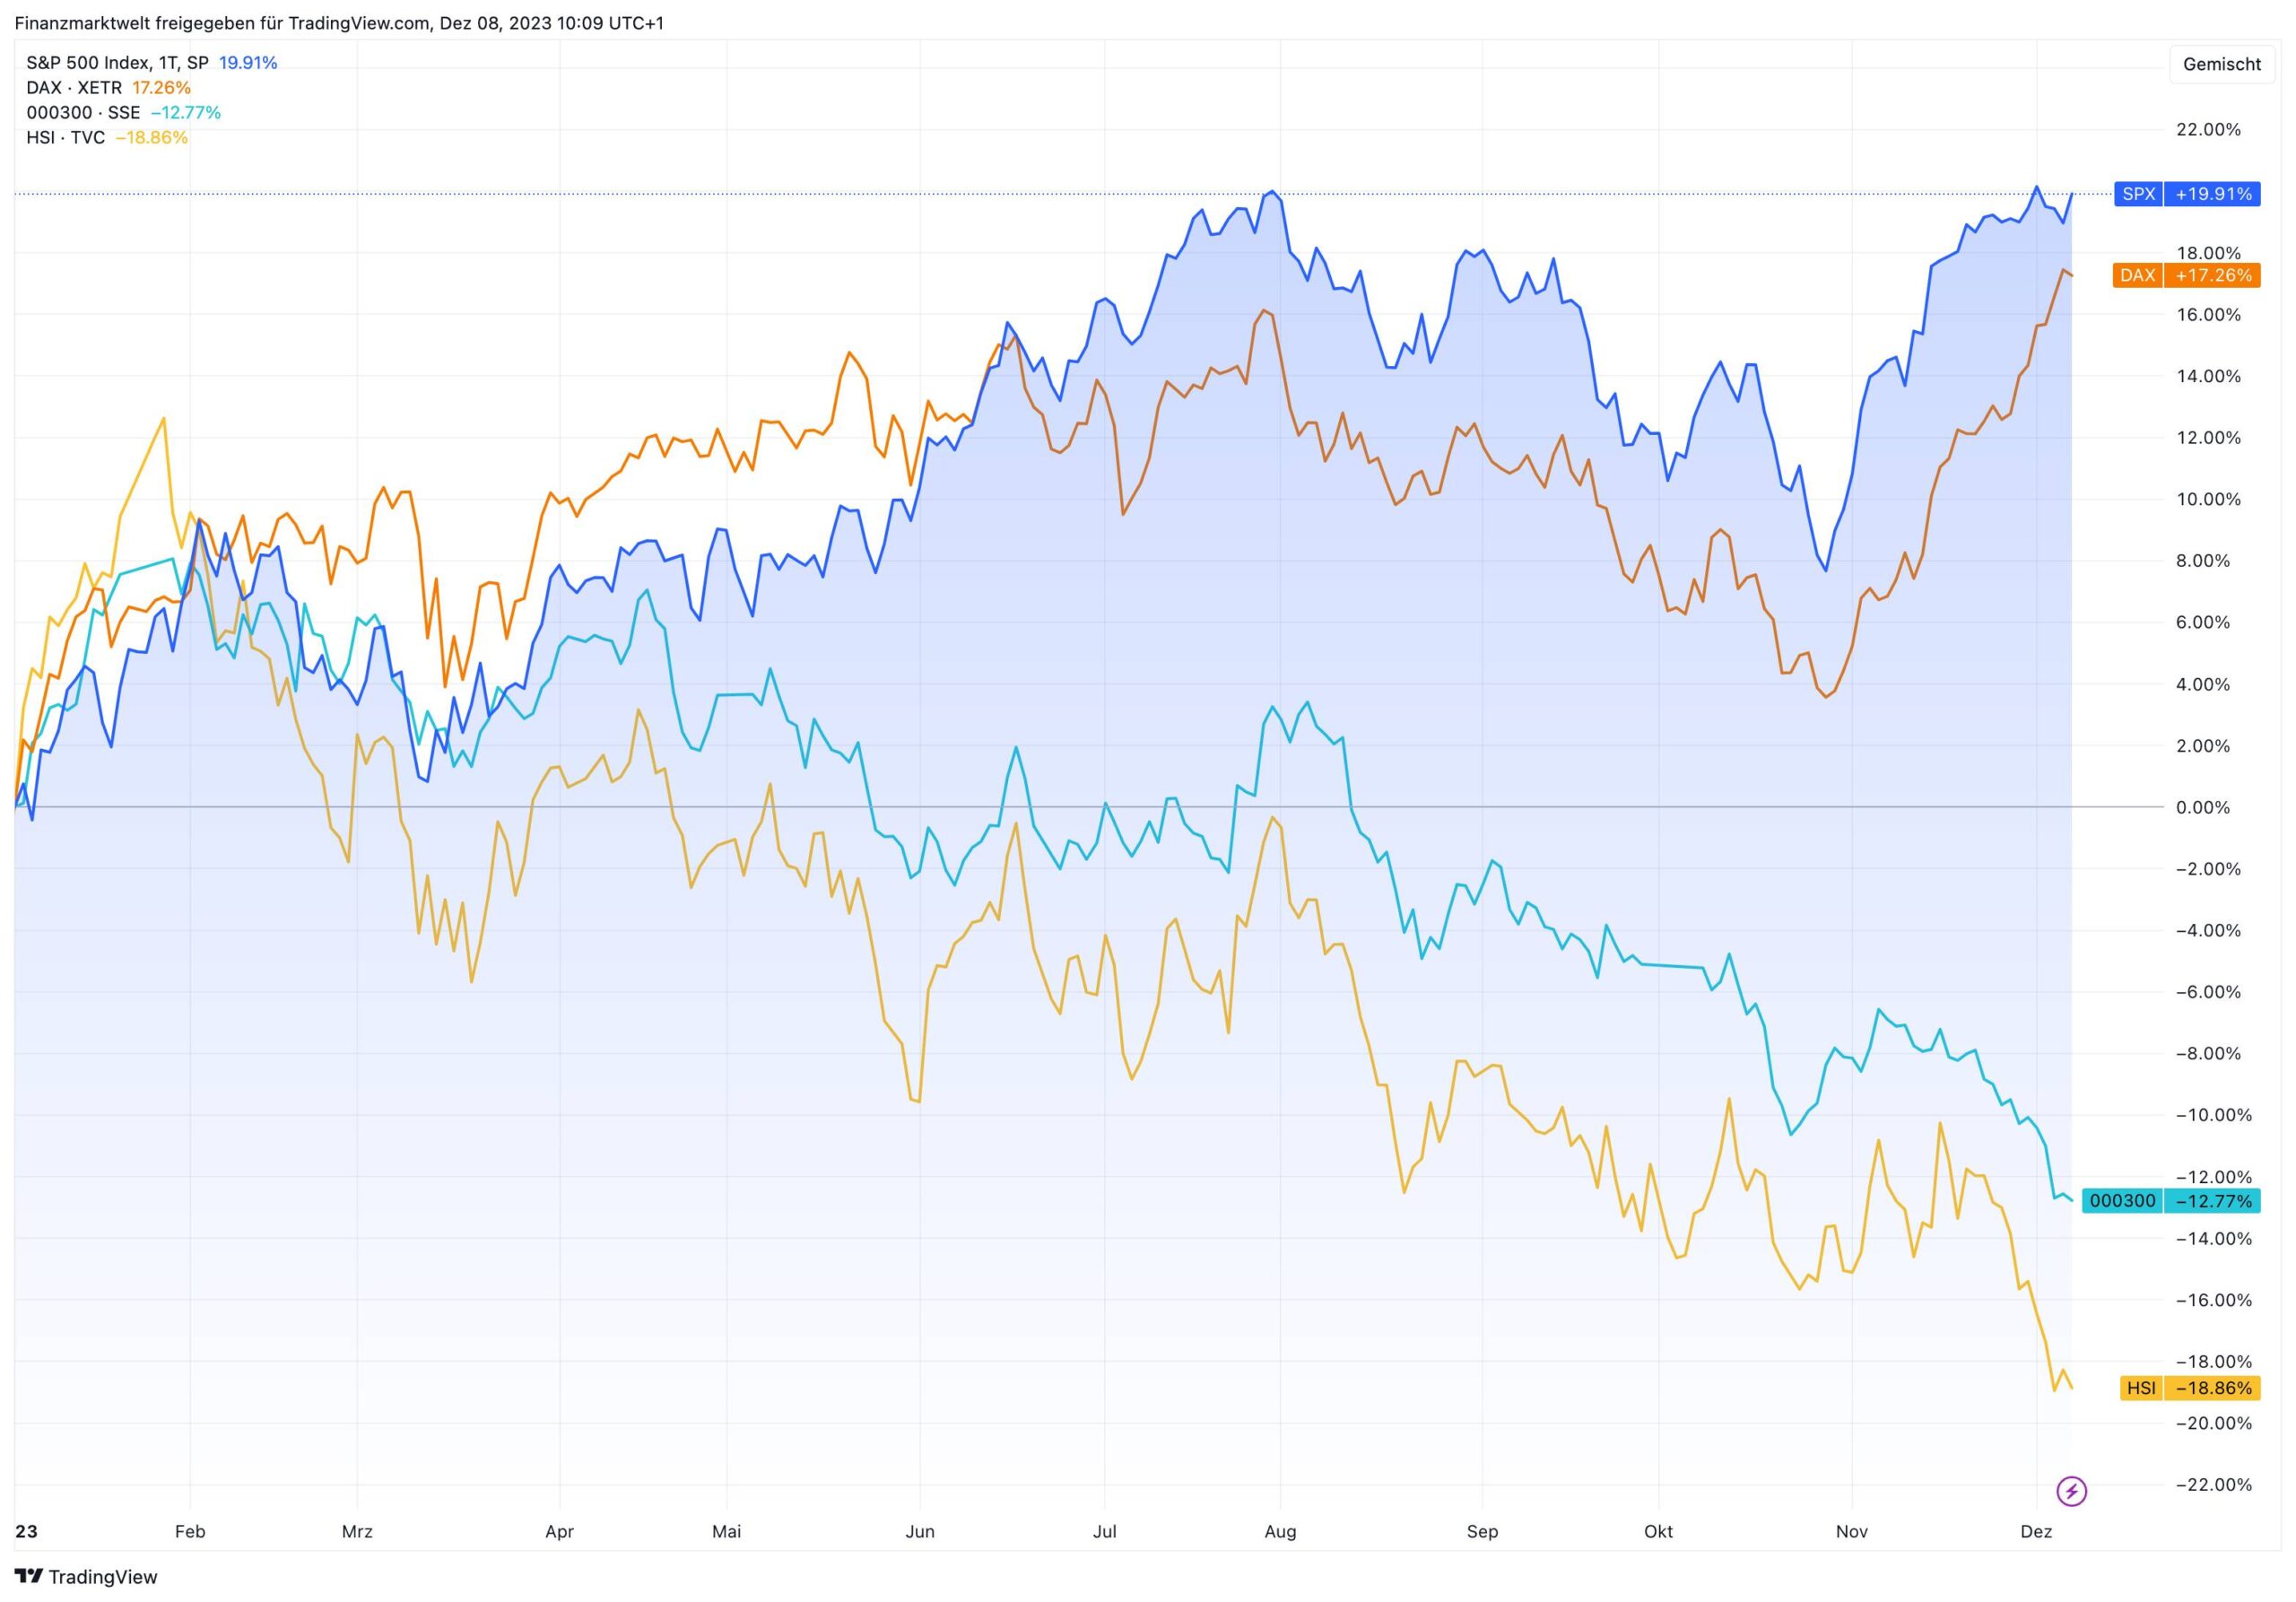 S&P 500 und Dax im Vergleich zu chinesischen Aktienindizes